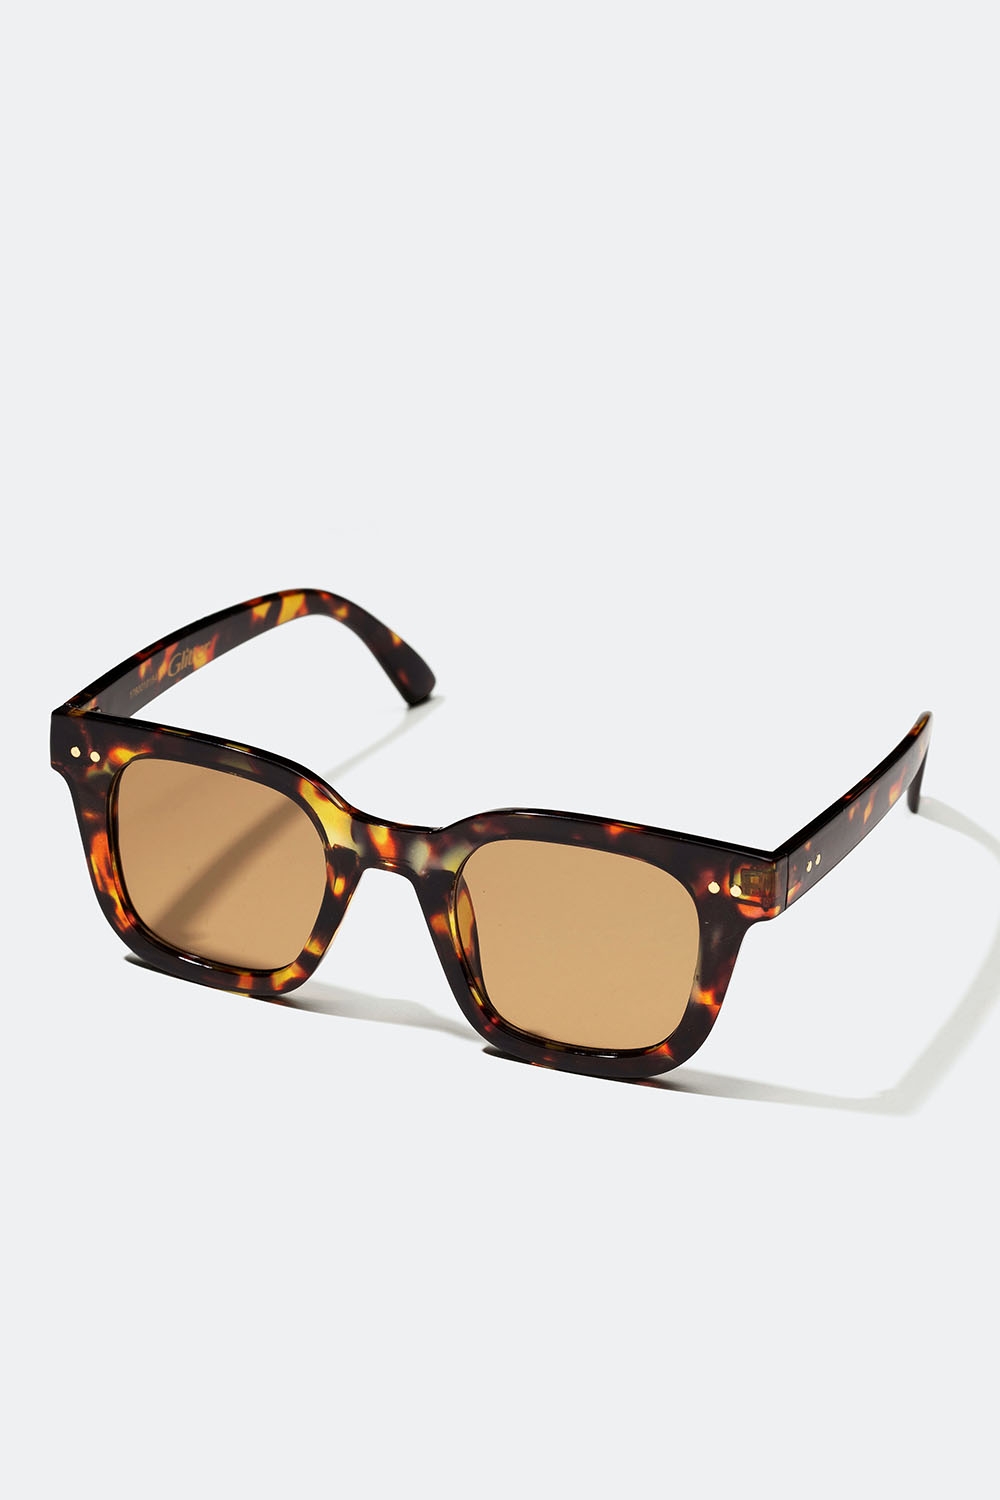 Solglasögon med bruna sköldpaddsmönstrade bågar i gruppen Accessoarer / Solglasögon hos Glitter (176001018400)